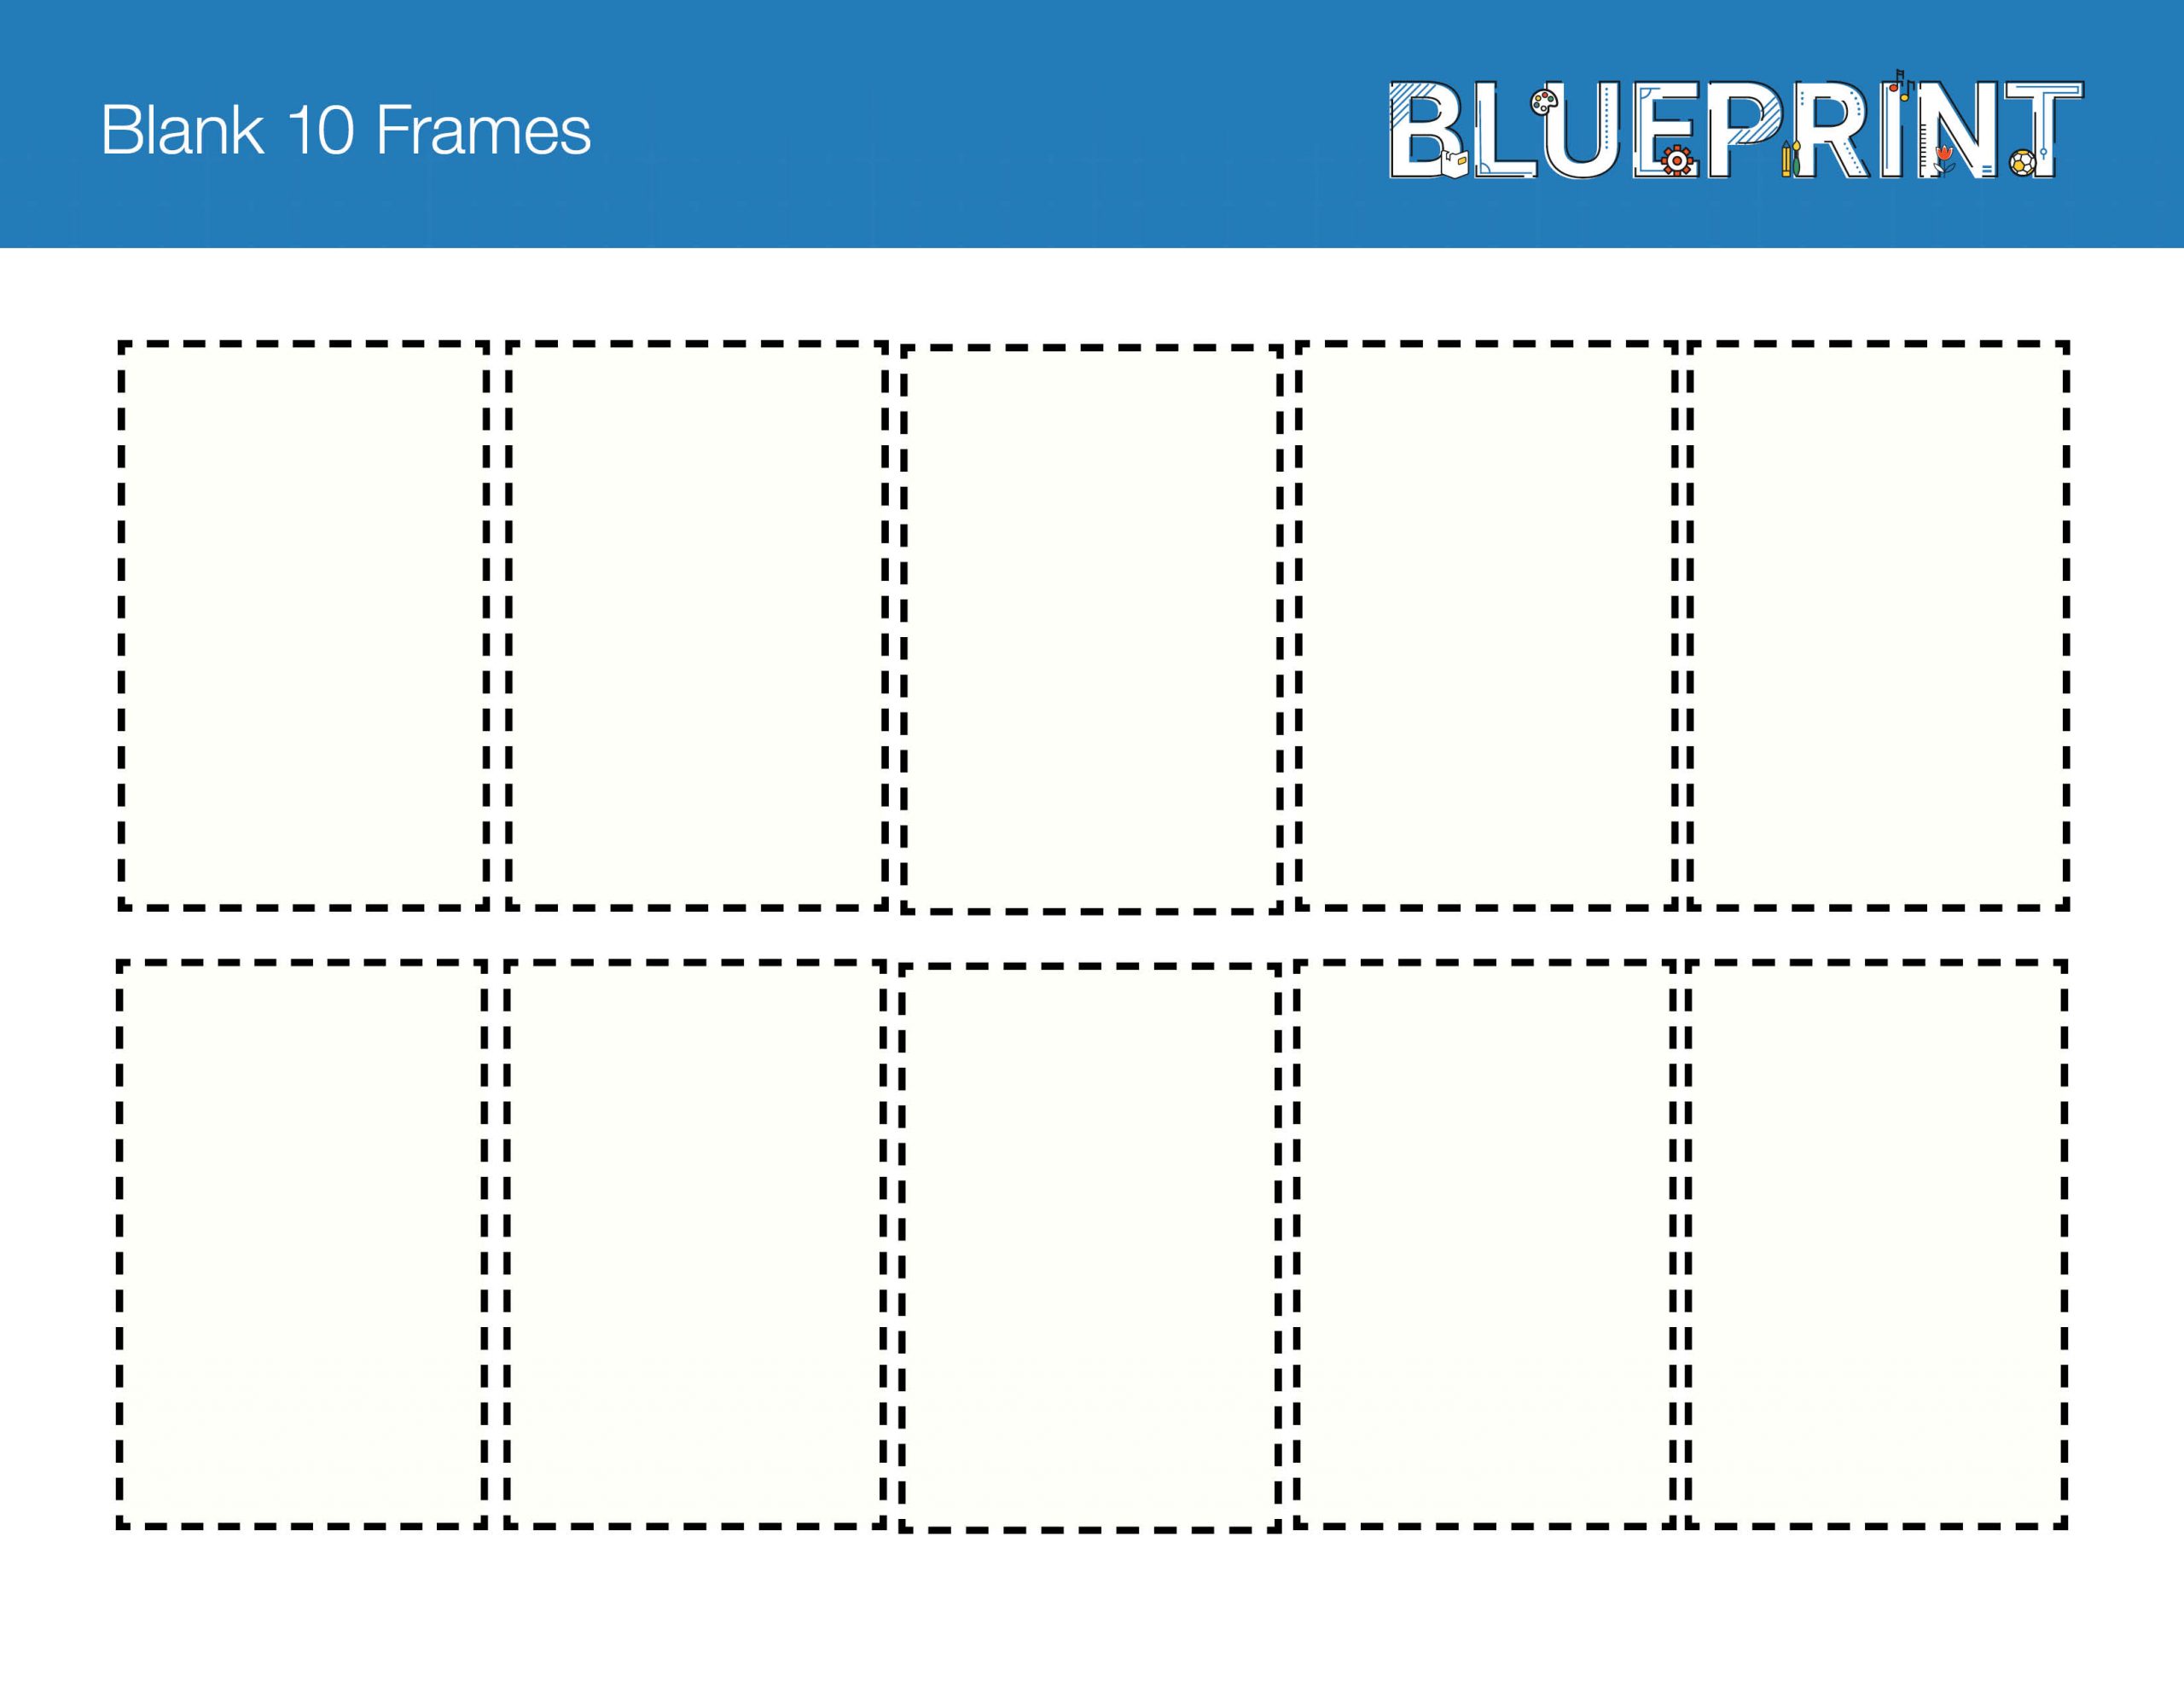 Blank 10 Frames Week 1, Day 2 (SG)